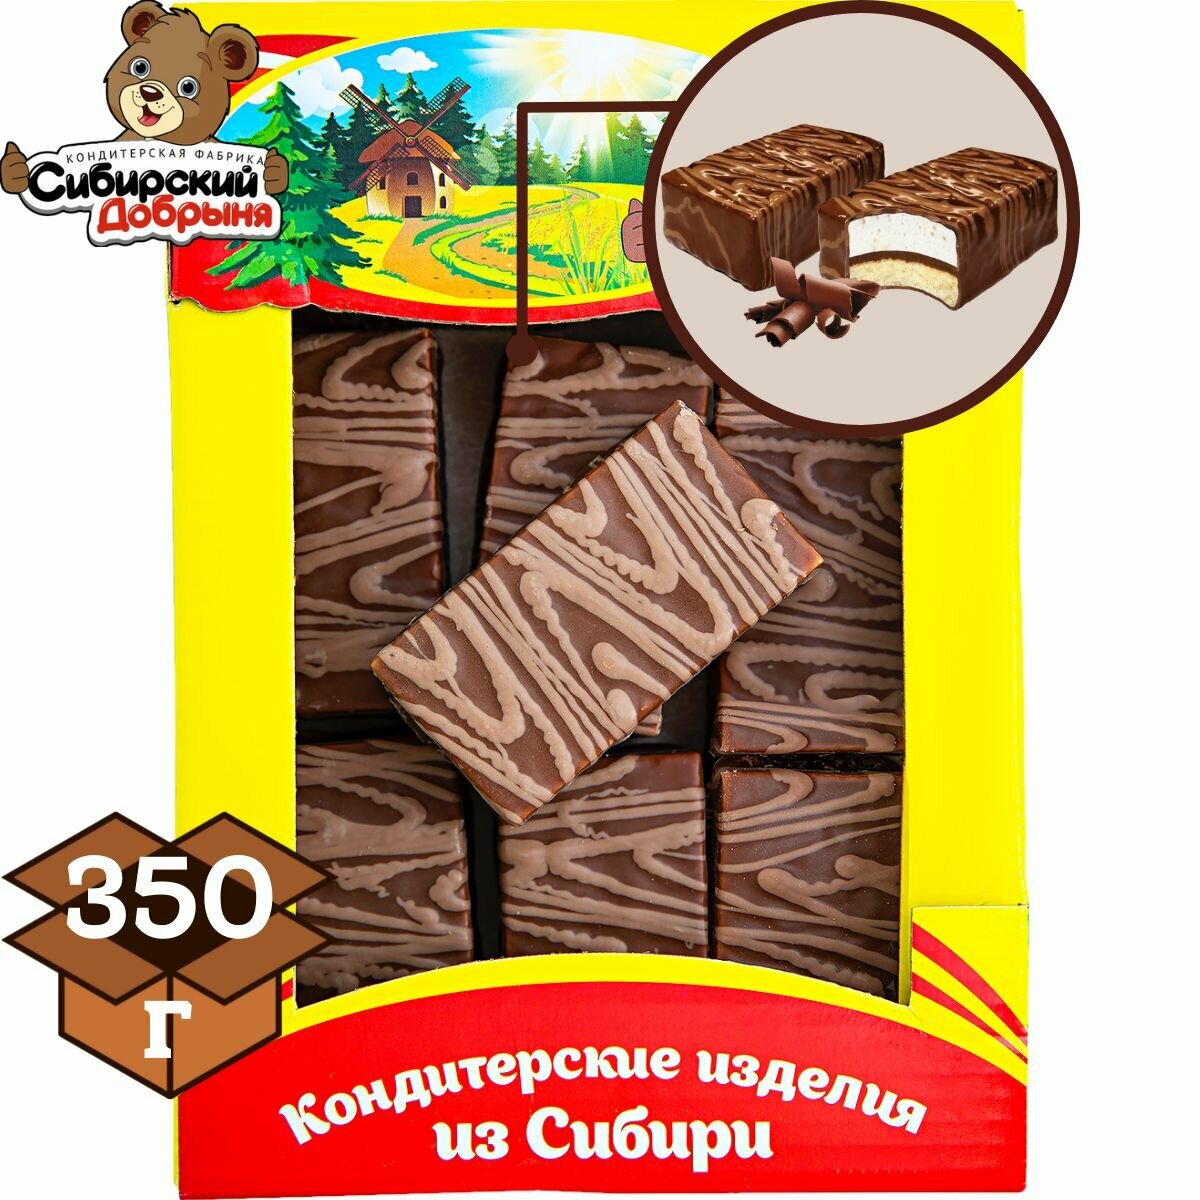 Пирожные двойной десерт шоколад 350 гр  мишка в малиннике  Сибирский добрыня